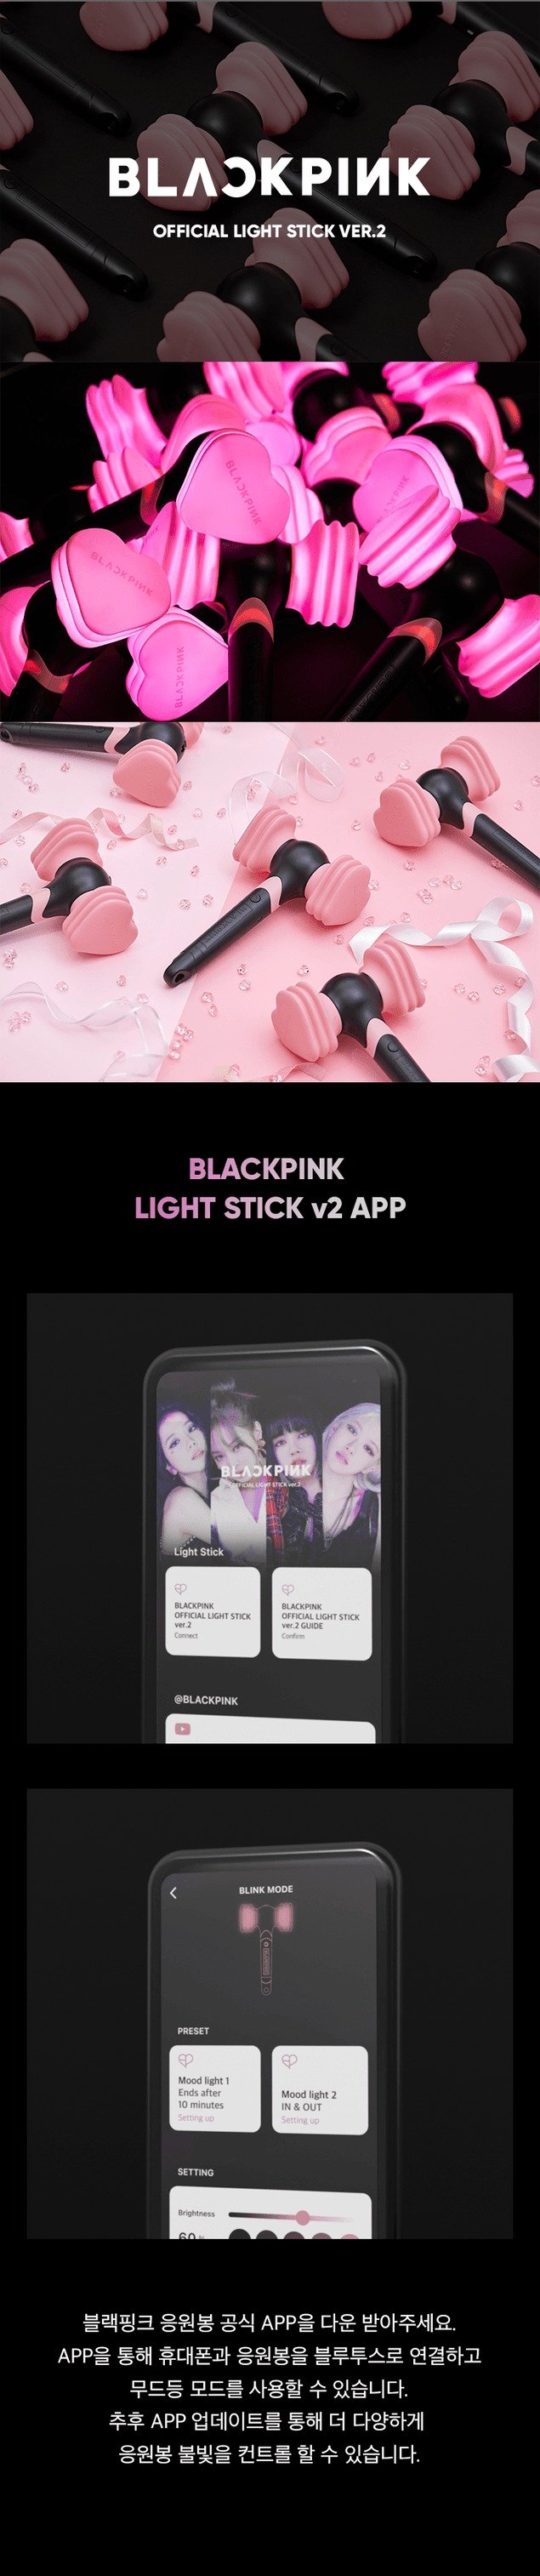 Blackpink Stick de luz oficial ver.2